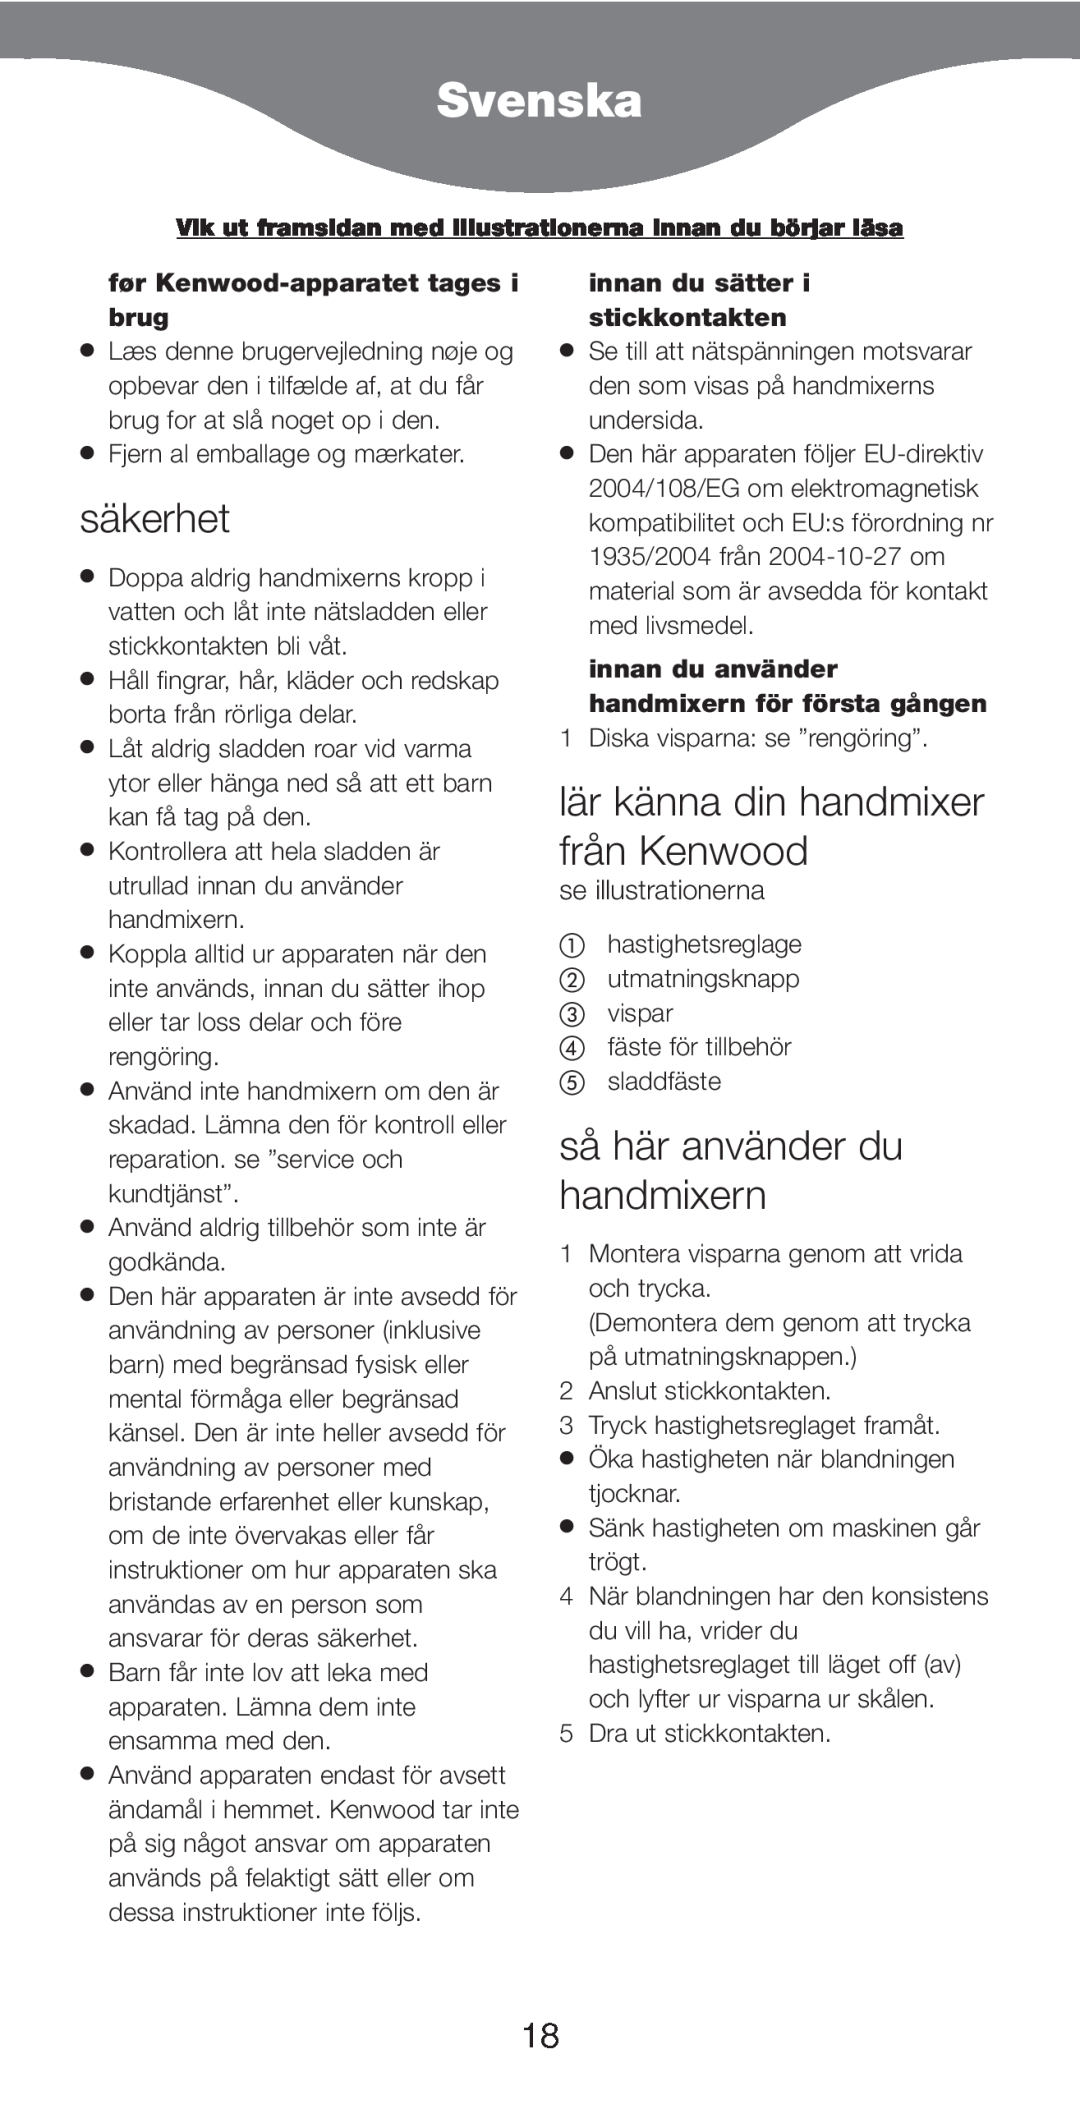 Kenwood HM226 Svenska, säkerhet, lär känna din handmixer från Kenwood, så här använder du handmixern, se illustrationerna 